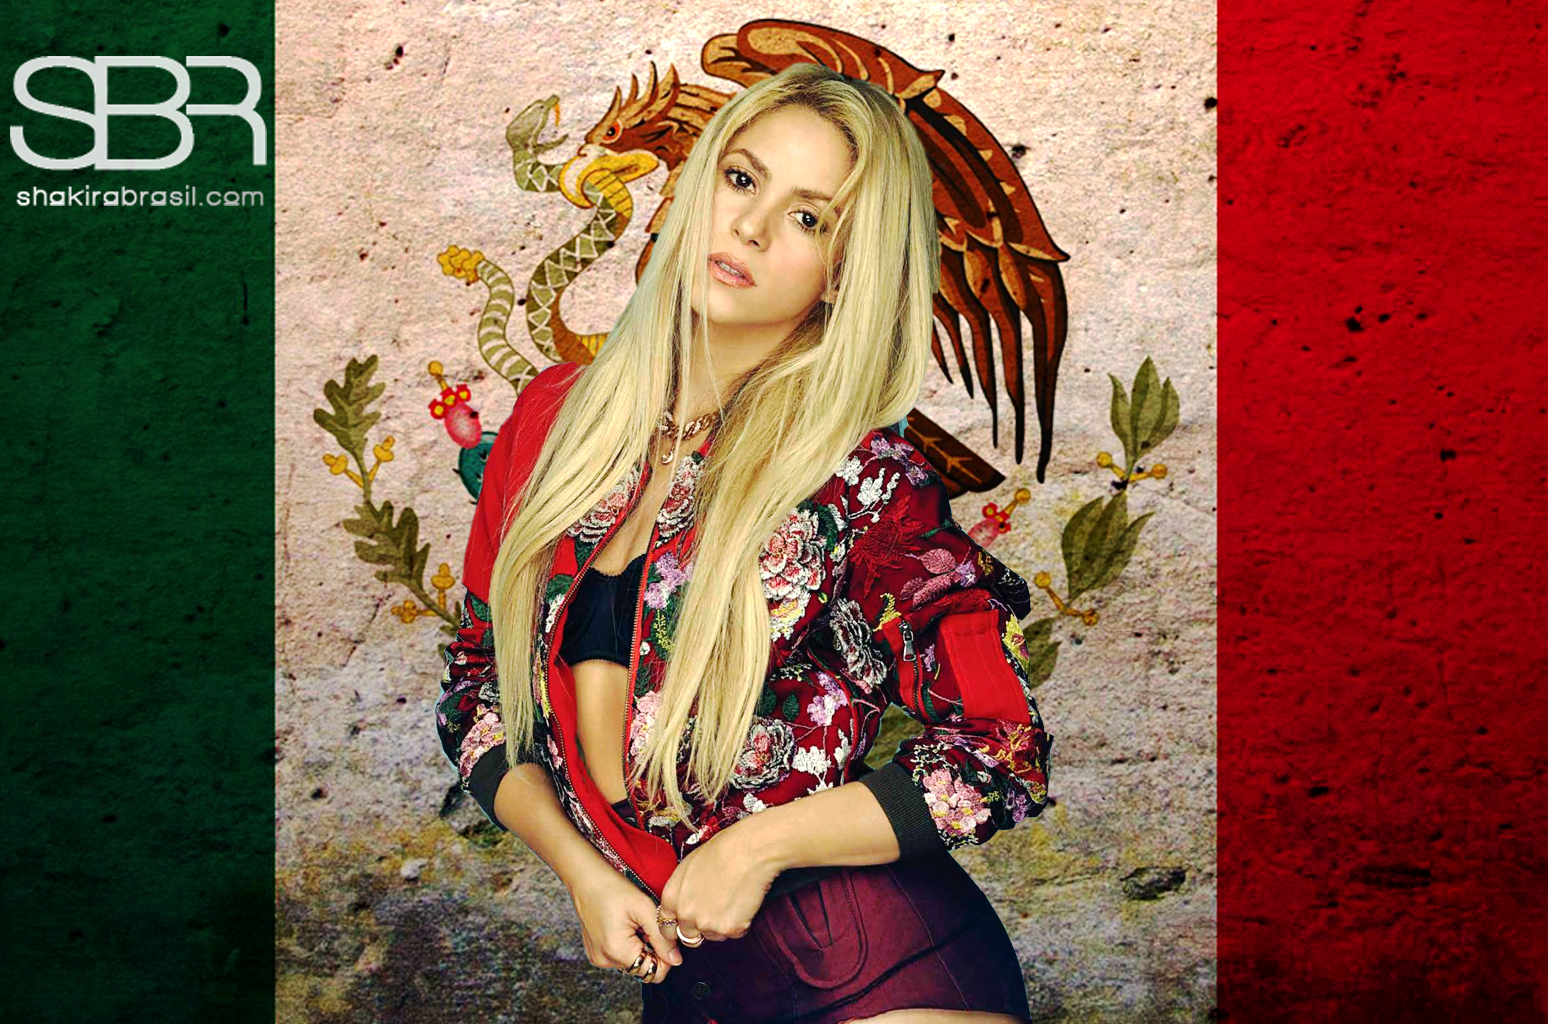 Confira os certificados oficiais de vendas de Shakira no México